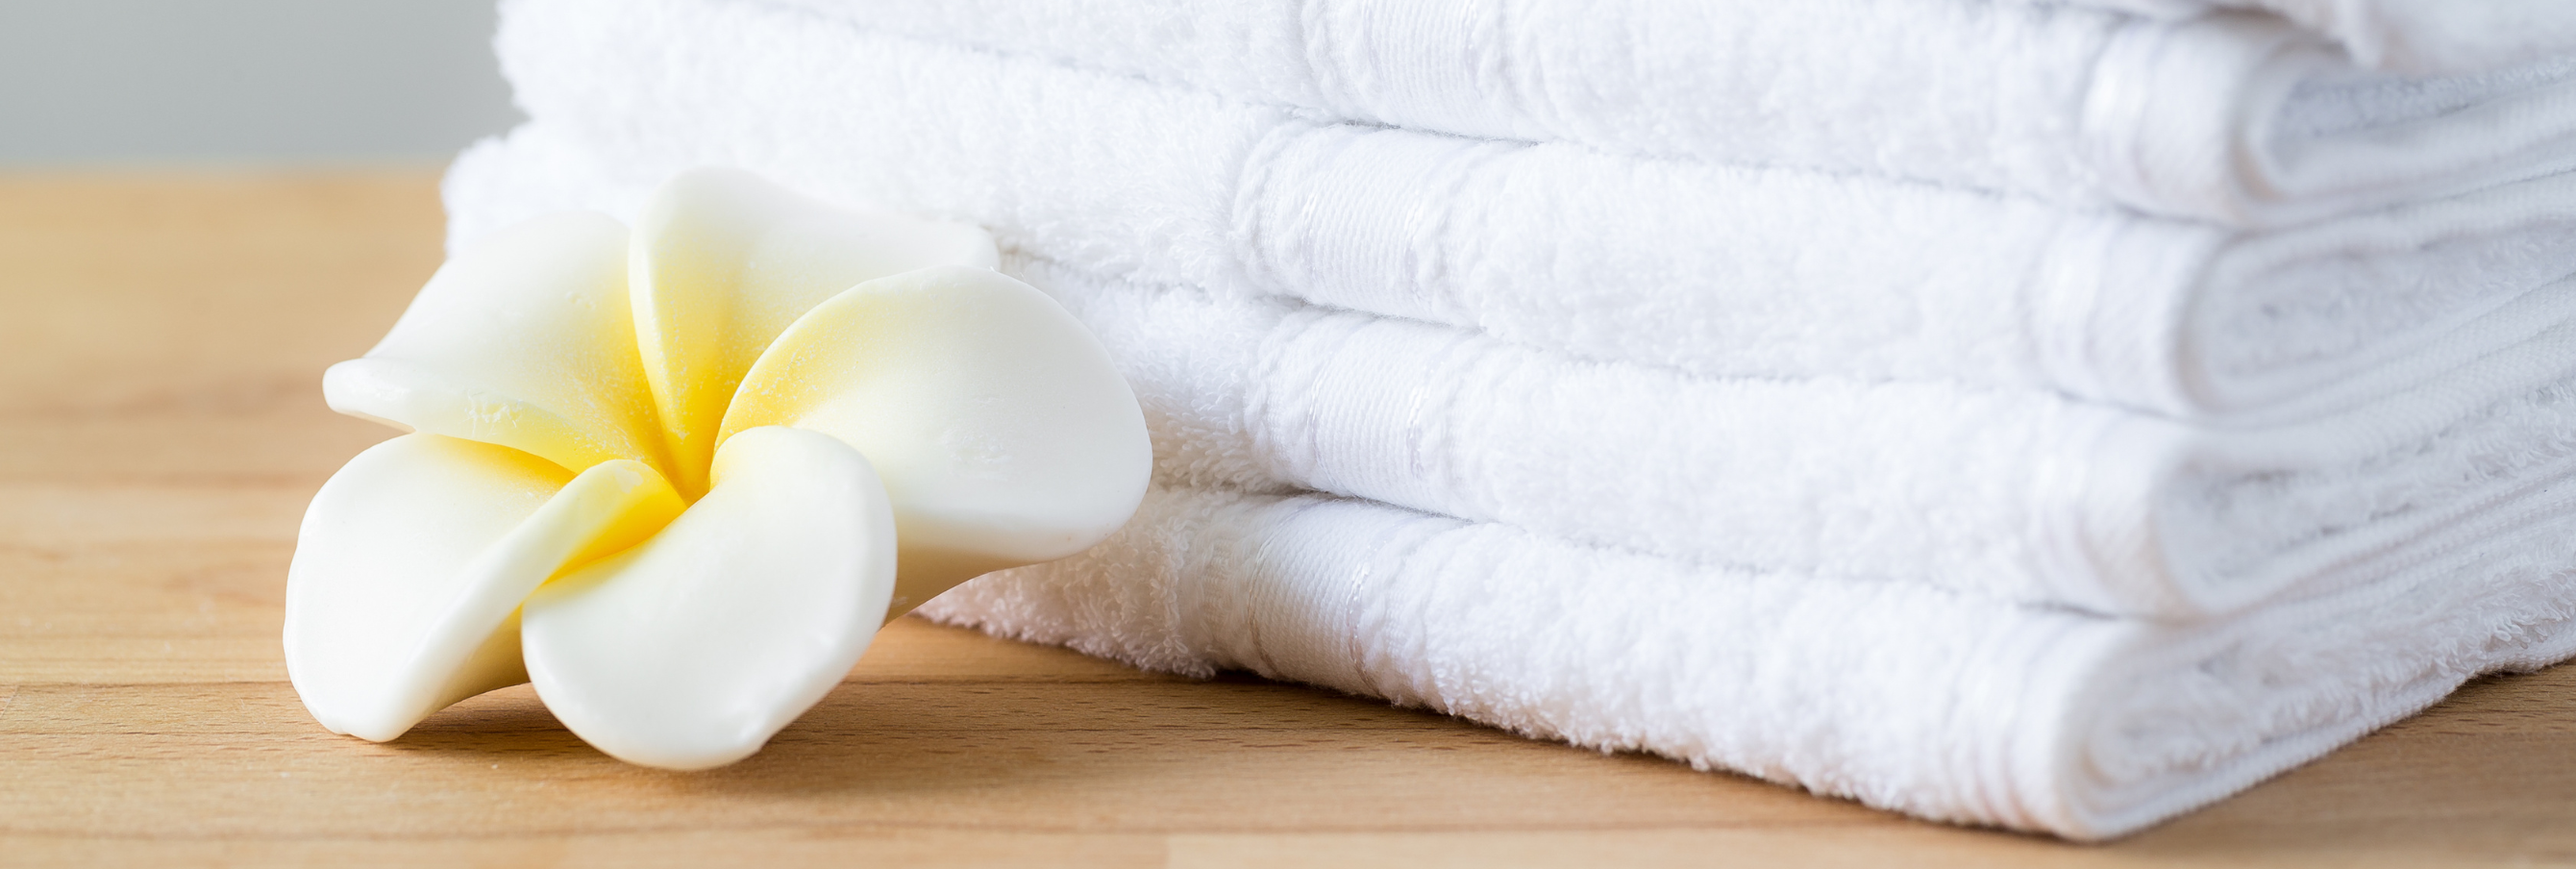 Как сделать полотенца мягкими после стирки: 5 полезных лайфхаков